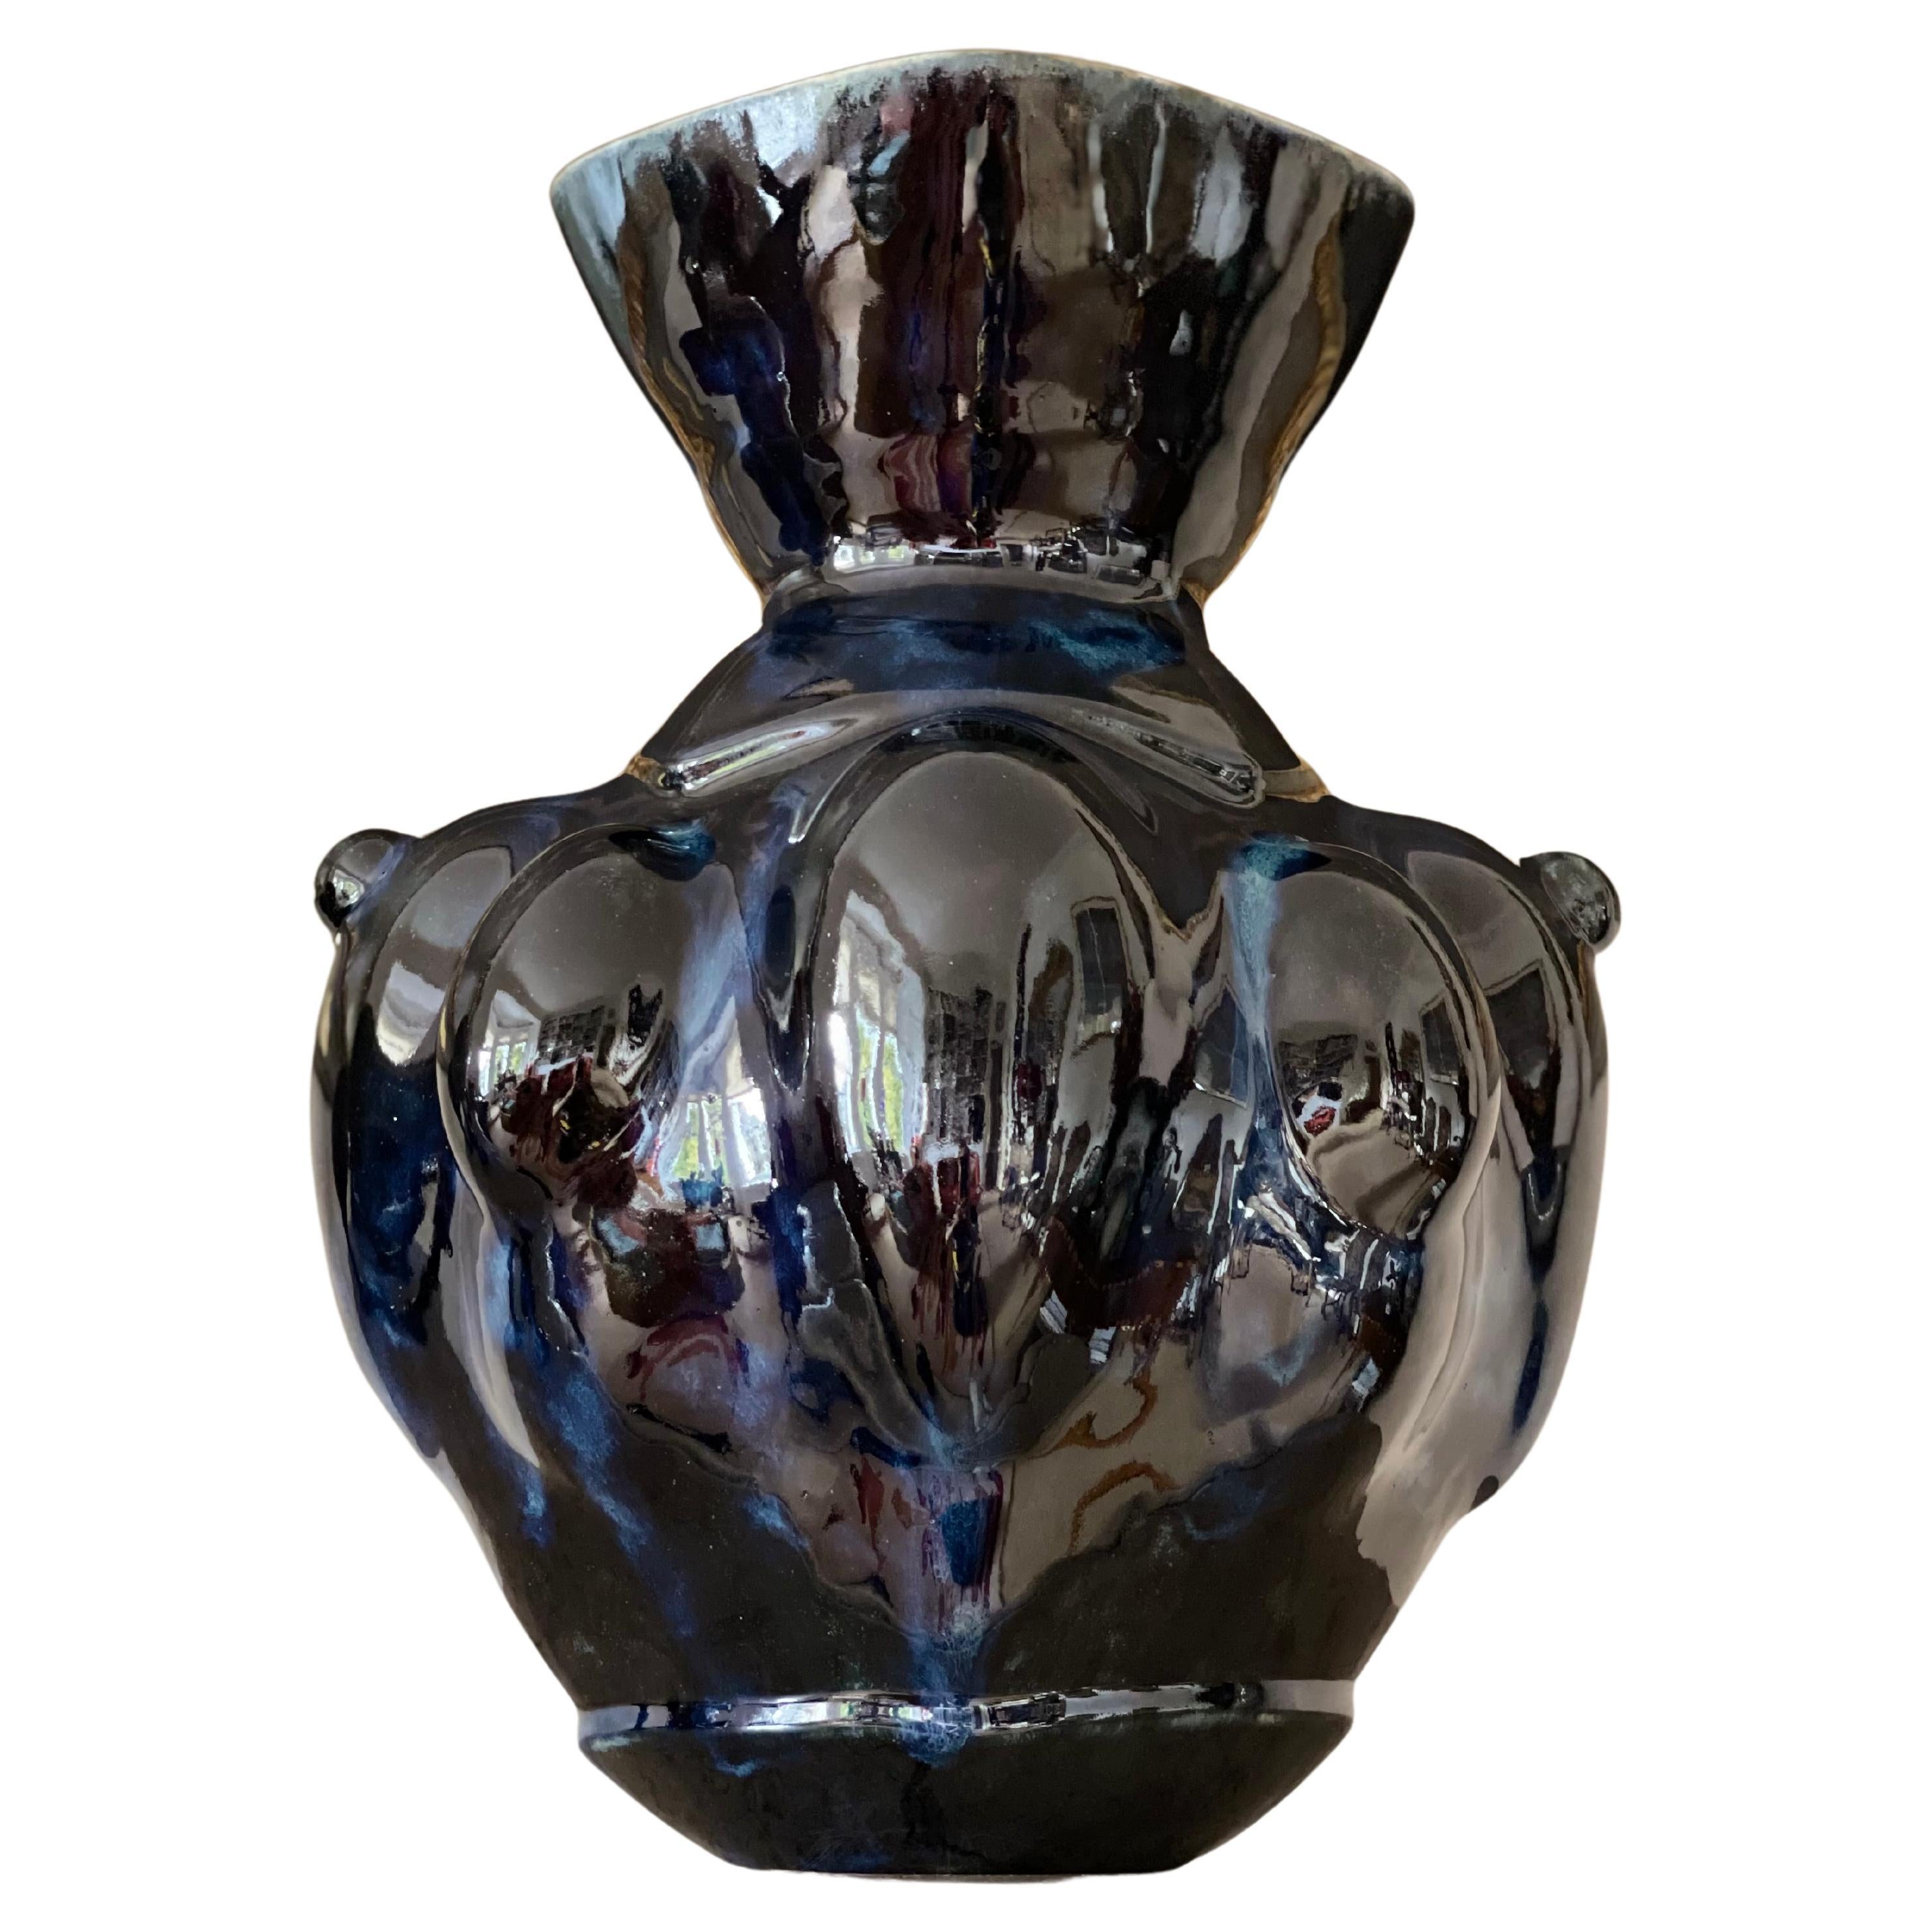 Vase en céramique bleu profond - Pièce unique italienne contemporaine du 21e siècle en grès